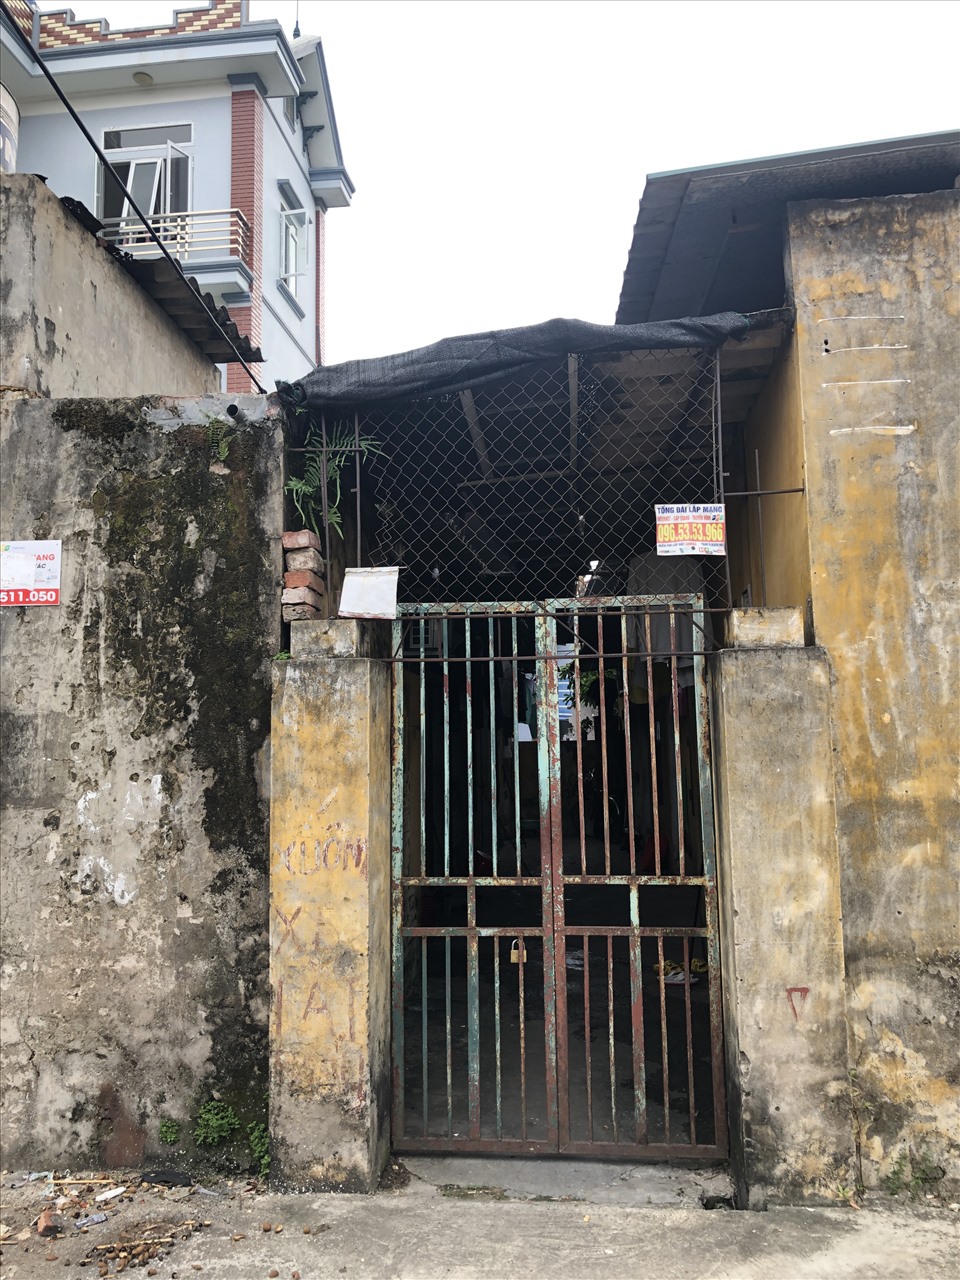 Một khu nhà trọ xập xệ, xuống cấp cho công nhân thuê tại xã Kim Chung, huyện Đông Anh, Hà Nội. Ảnh: Bảo Hân